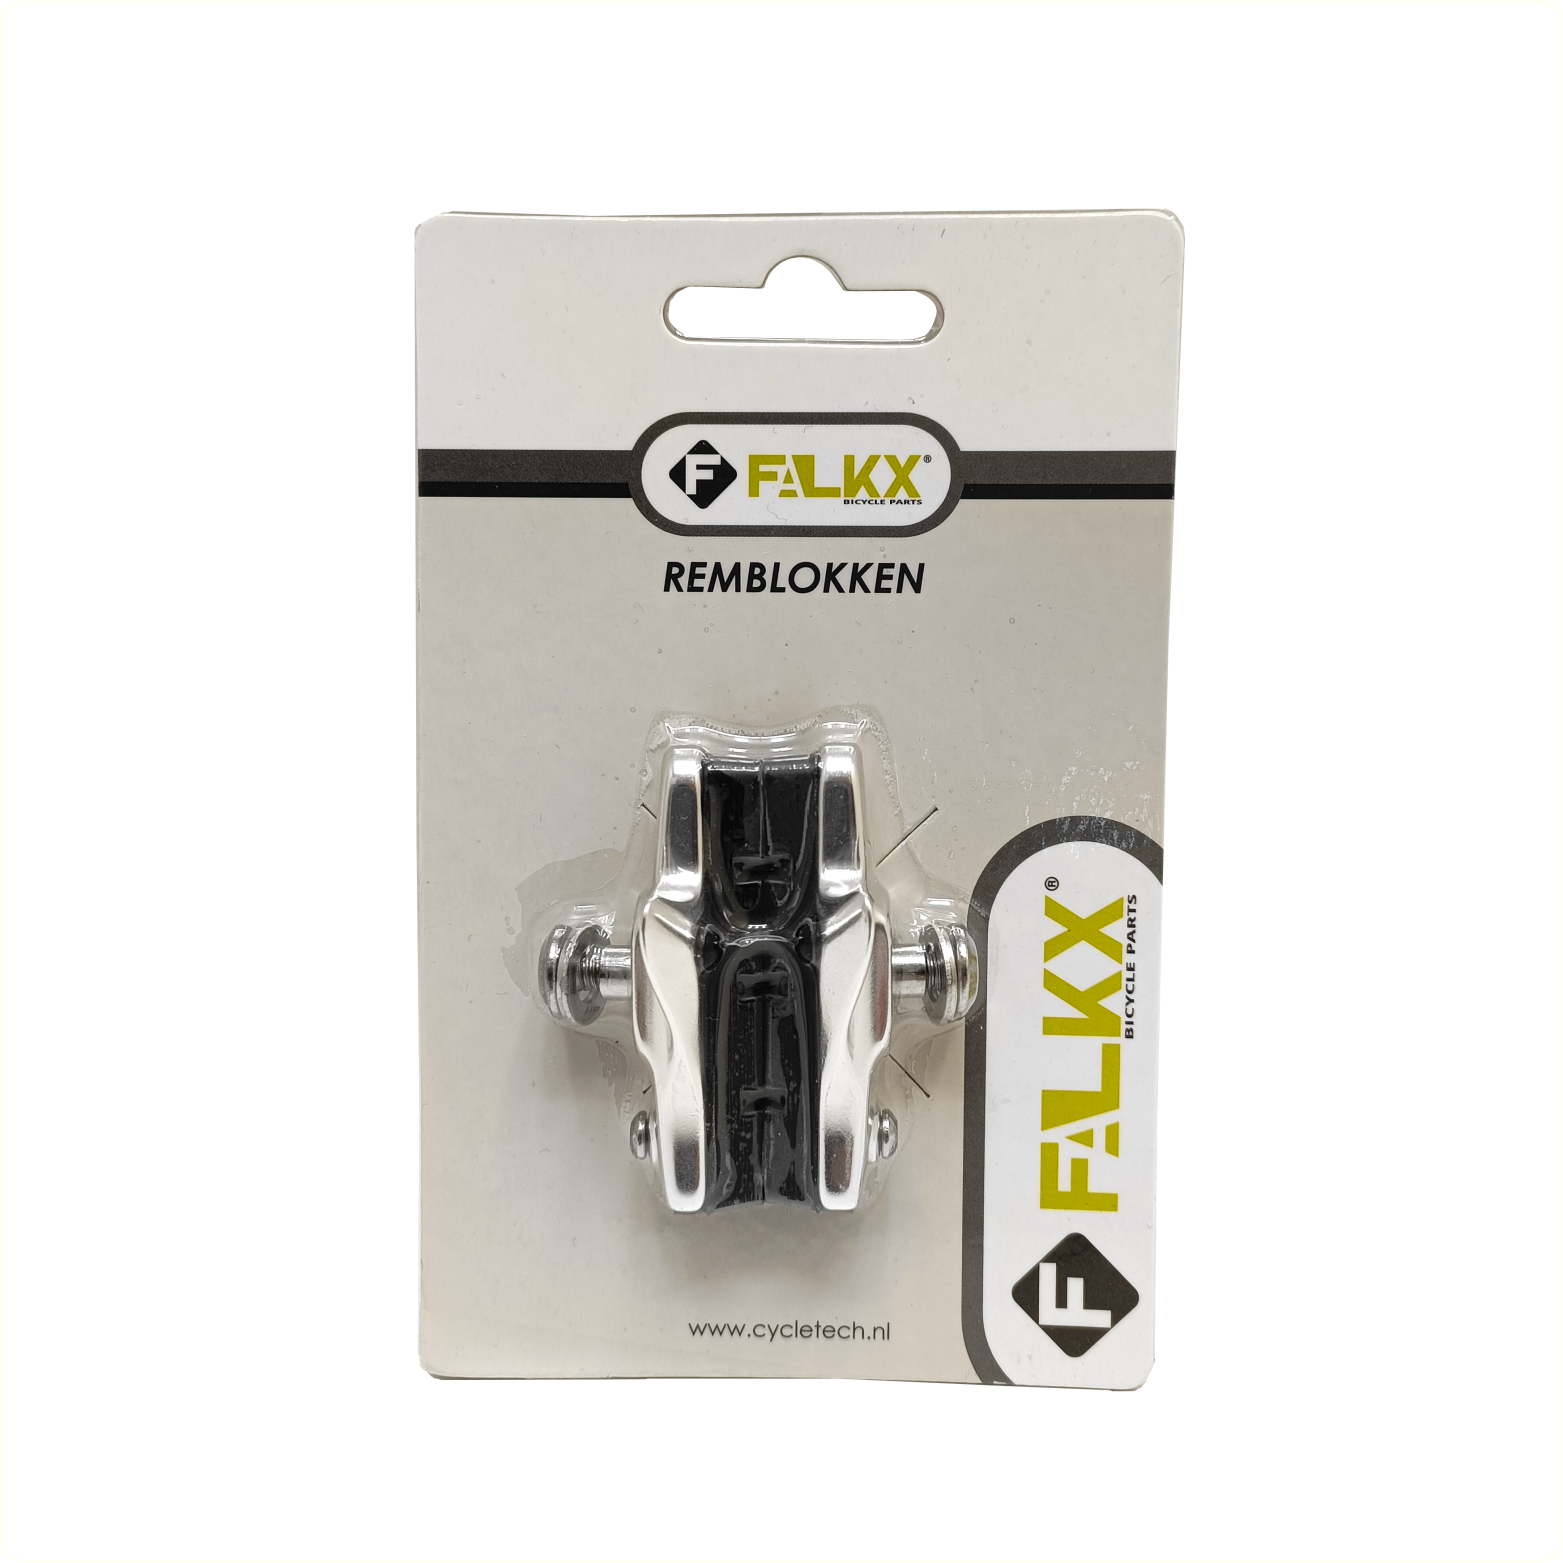 FALKX cartridge remblokken 50mm per paar (hangverpakking)